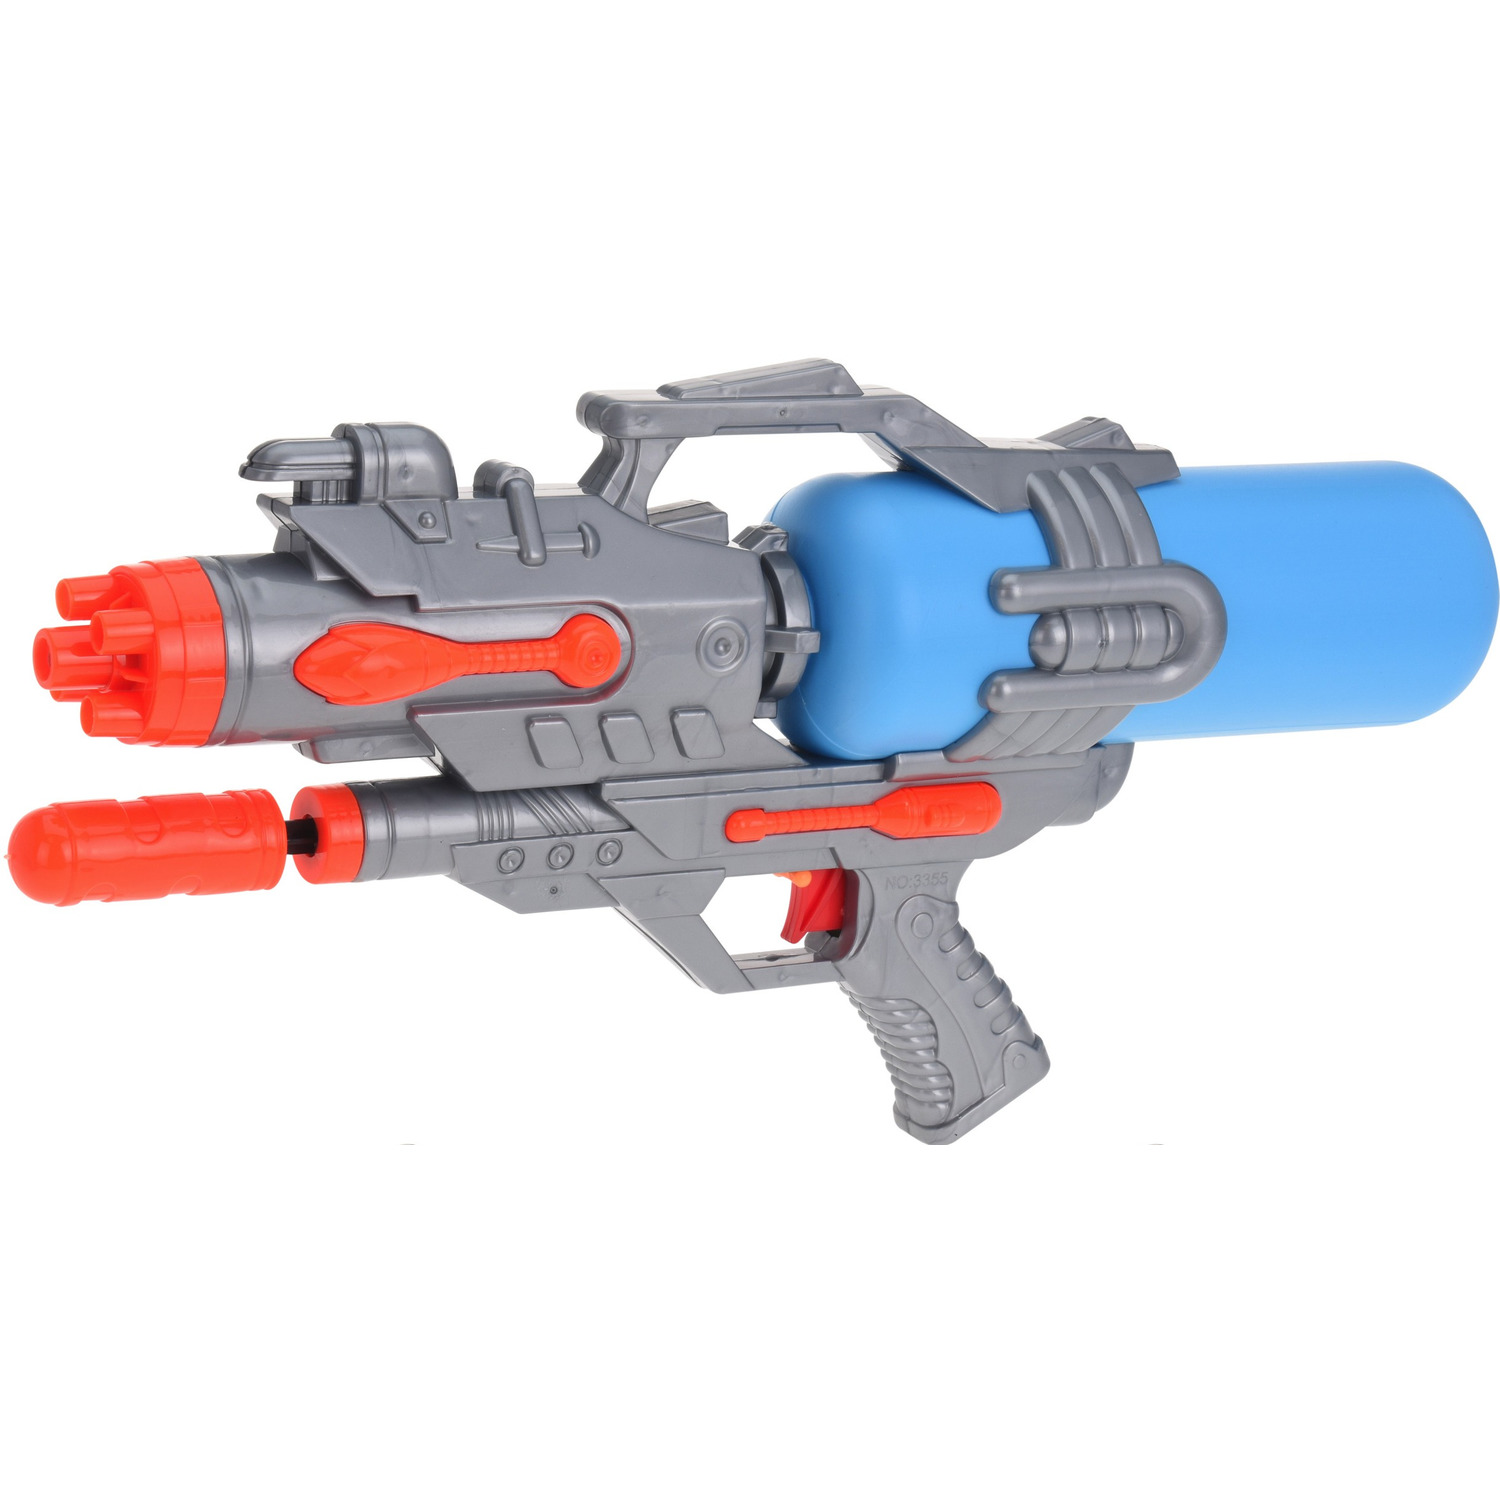 1x Waterpistolen/waterpistool oranje/blauw van 46 cm kinderspeelgoed